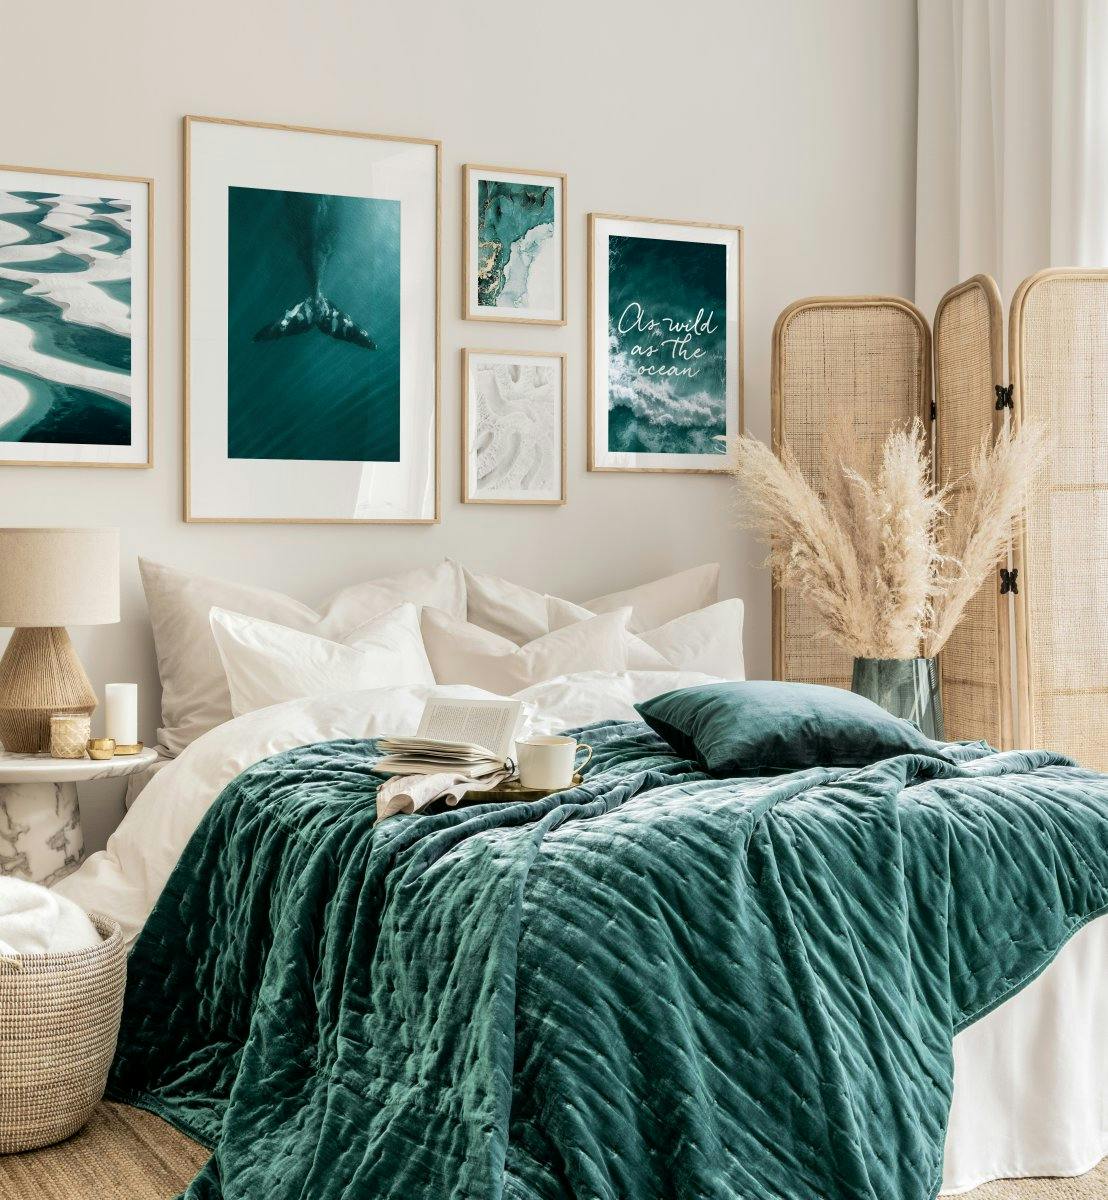 Galeria obrazow gleboki ocean niebieskie plakaty sztuka niebieska sypialnia